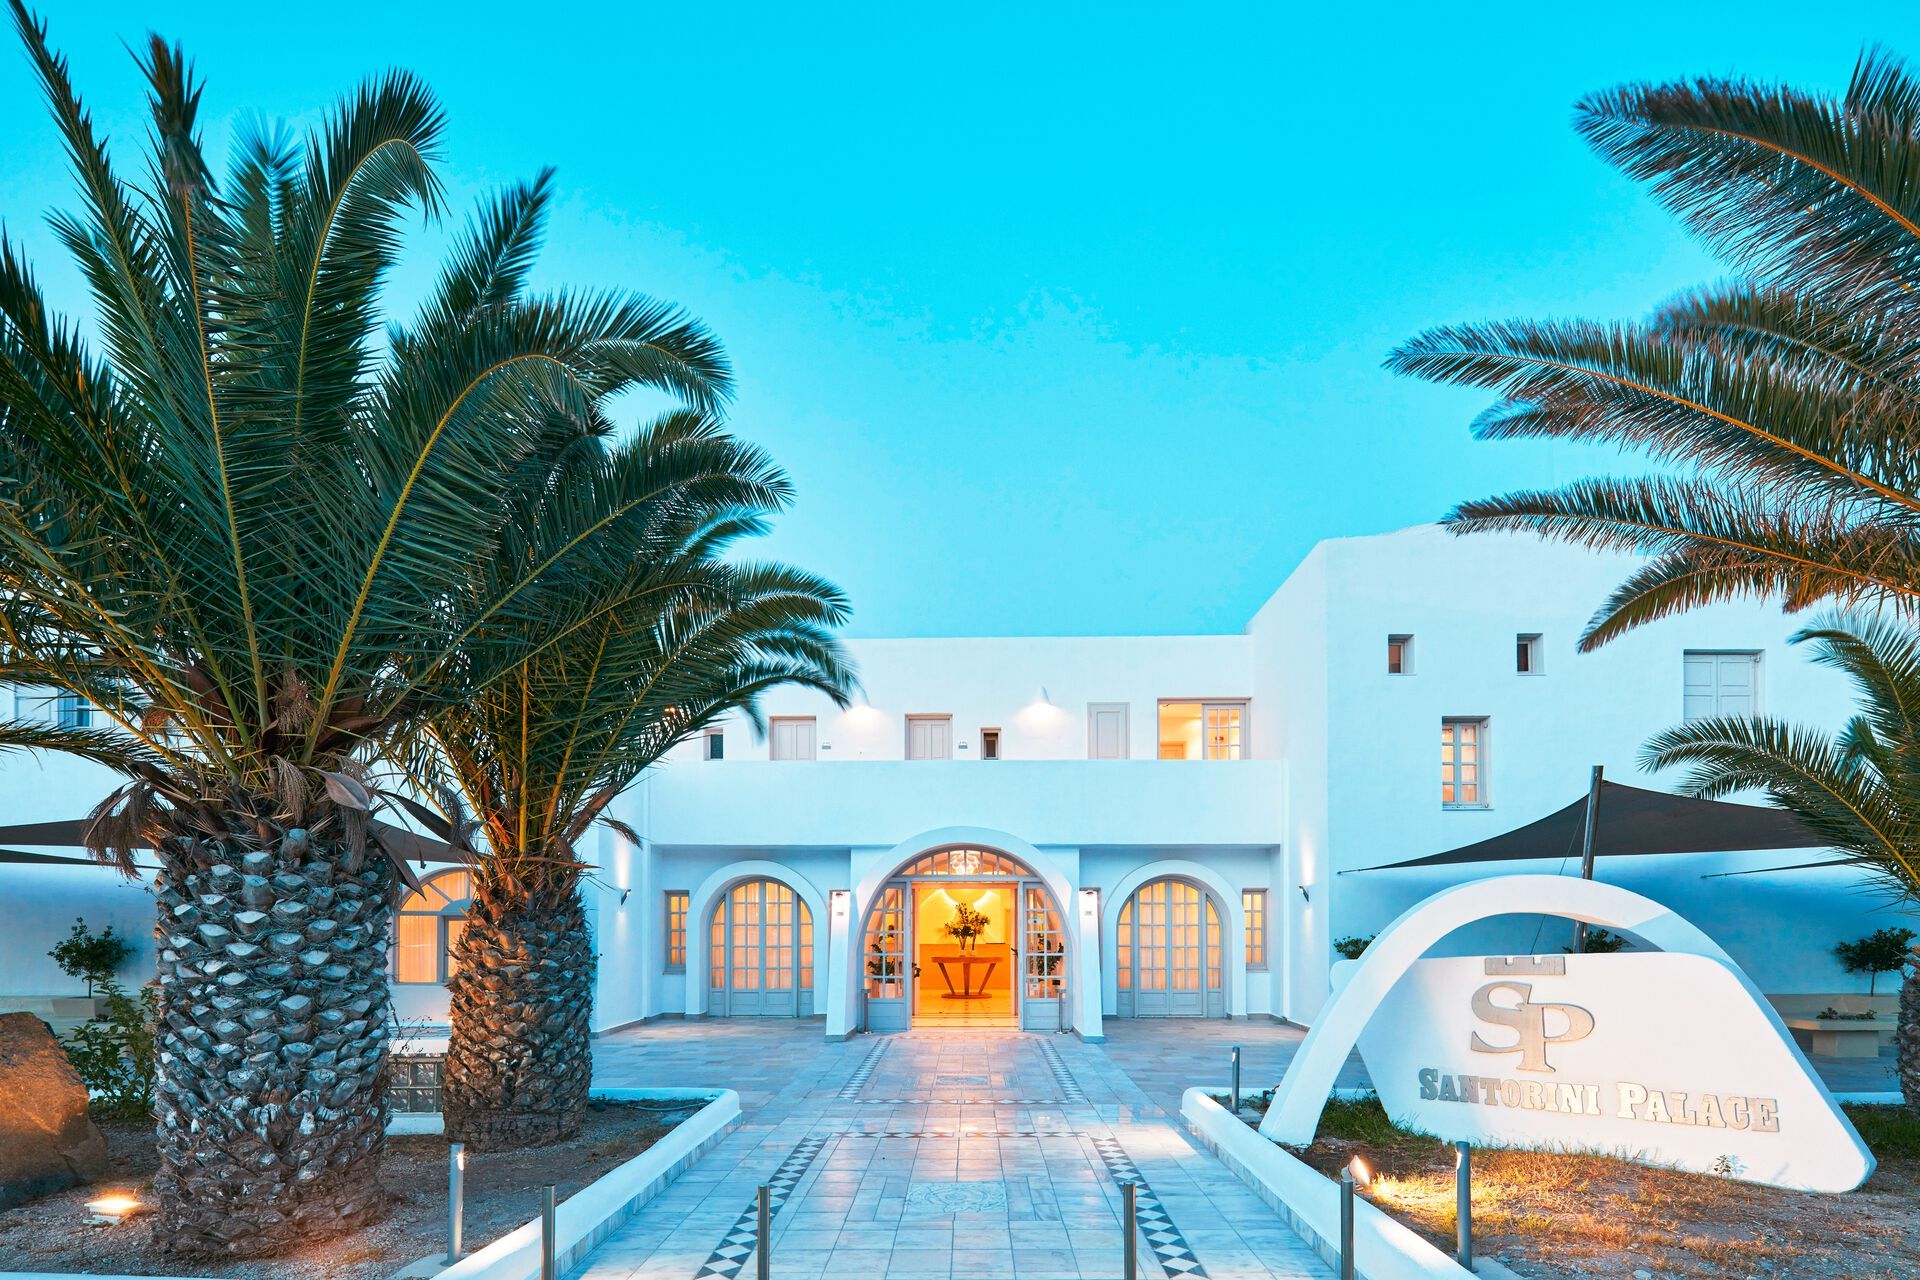 Grèce - Iles grecques - Les Cyclades - Santorin - Hôtel Santorini Palace 4*